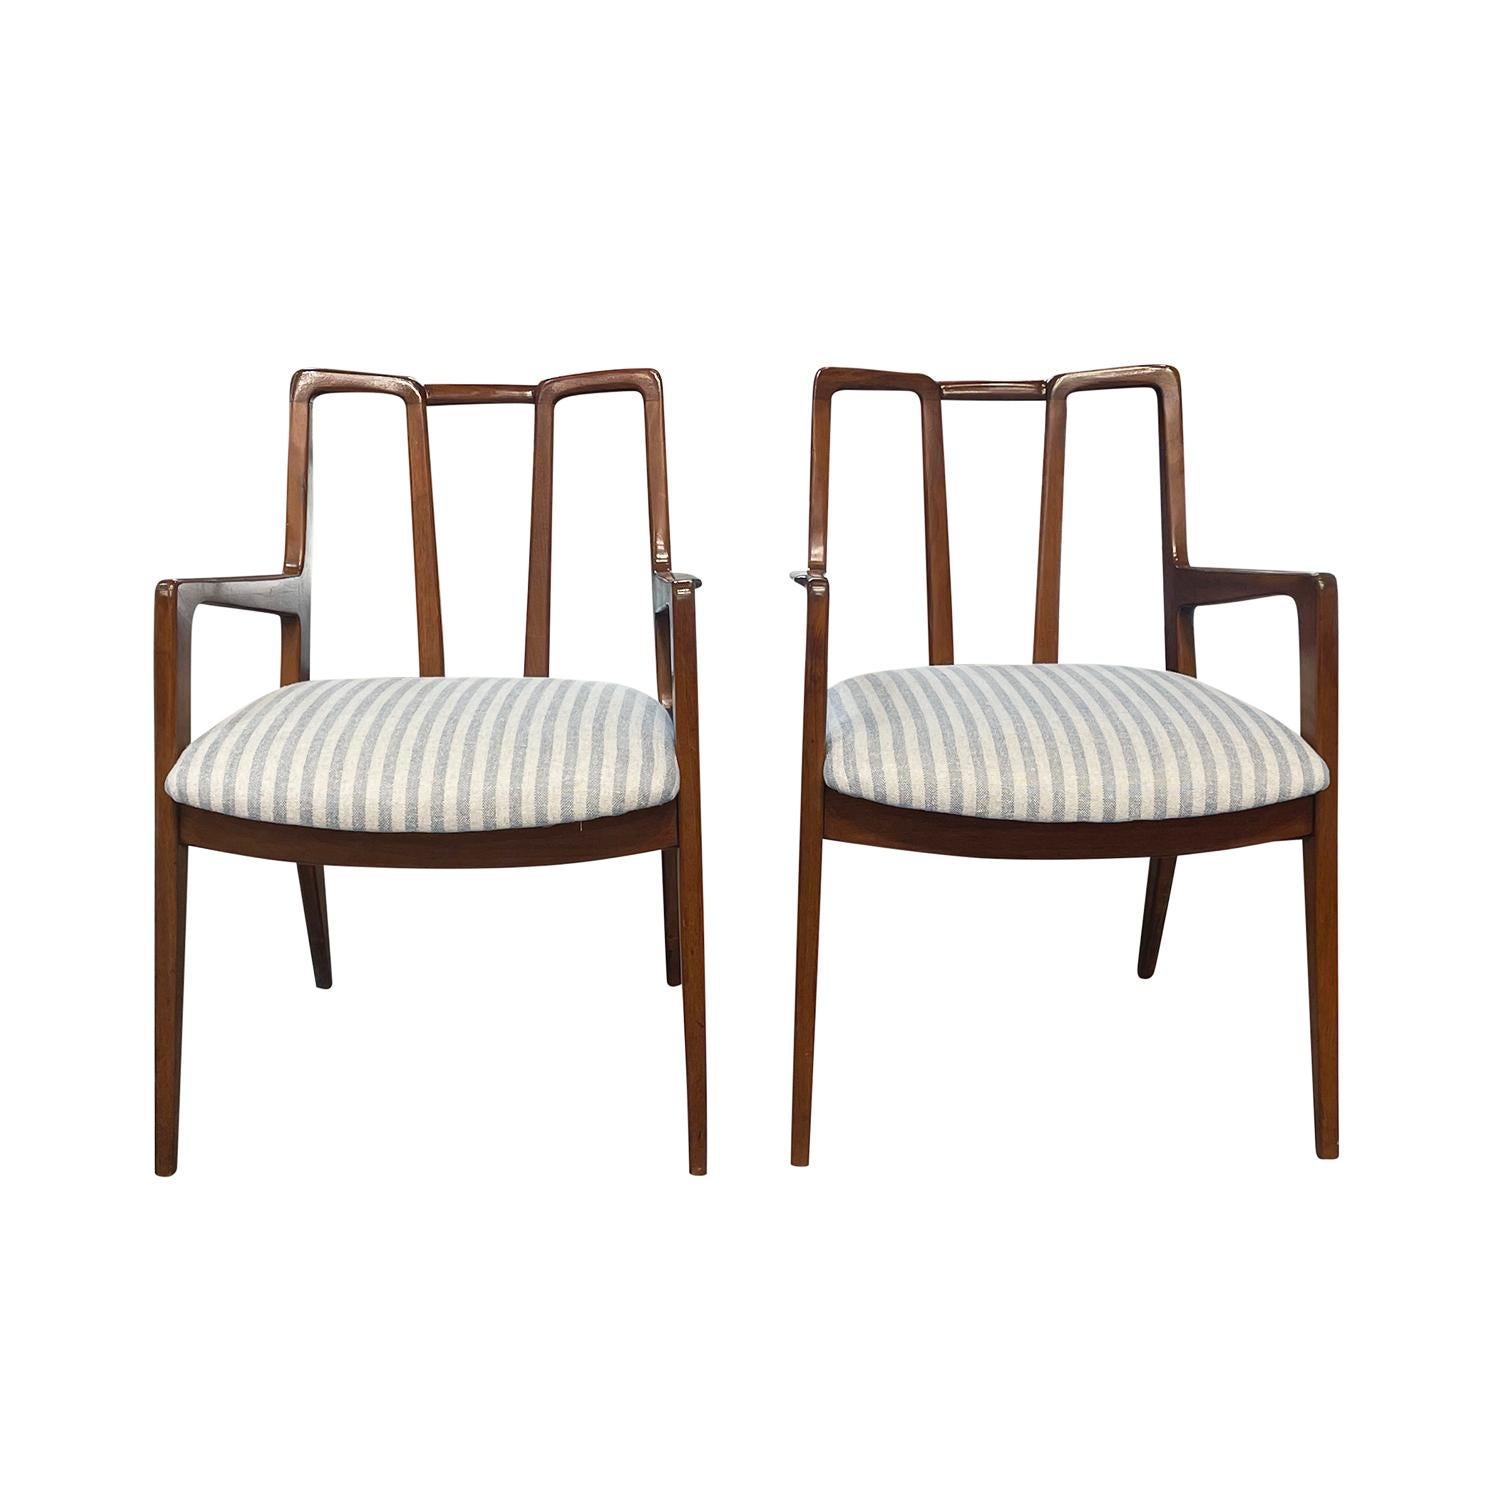 Ein Vintage Mid-Century modernes amerikanisches Sesselpaar aus handgefertigtem poliertem Nussbaum, entworfen und hergestellt von John Stuart in gutem Zustand. Die detaillierten Esszimmerstühle haben eine offene, geneigte skulpturale Rückenlehne mit